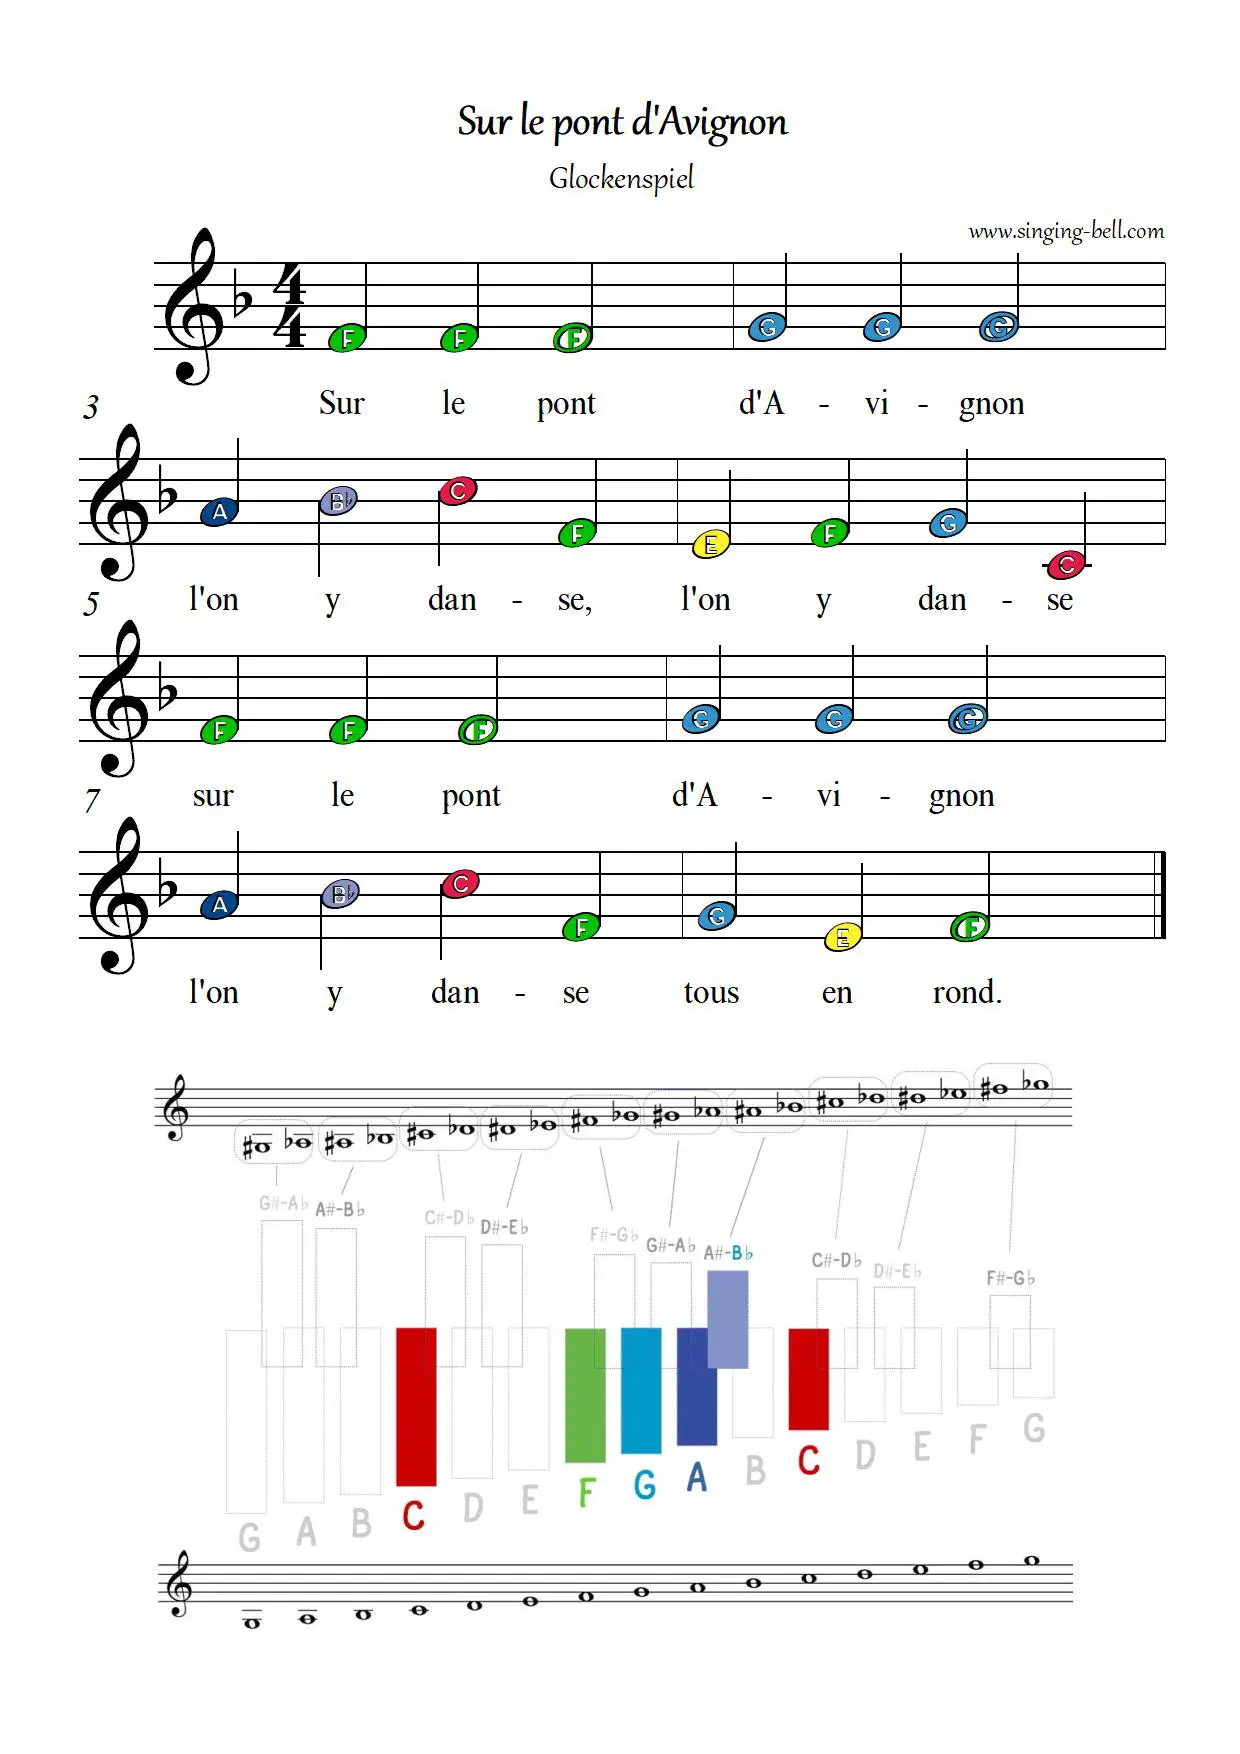 Sur le pont d'Avignon free xylophone glockenspiel sheet music letters color notes chart pdf